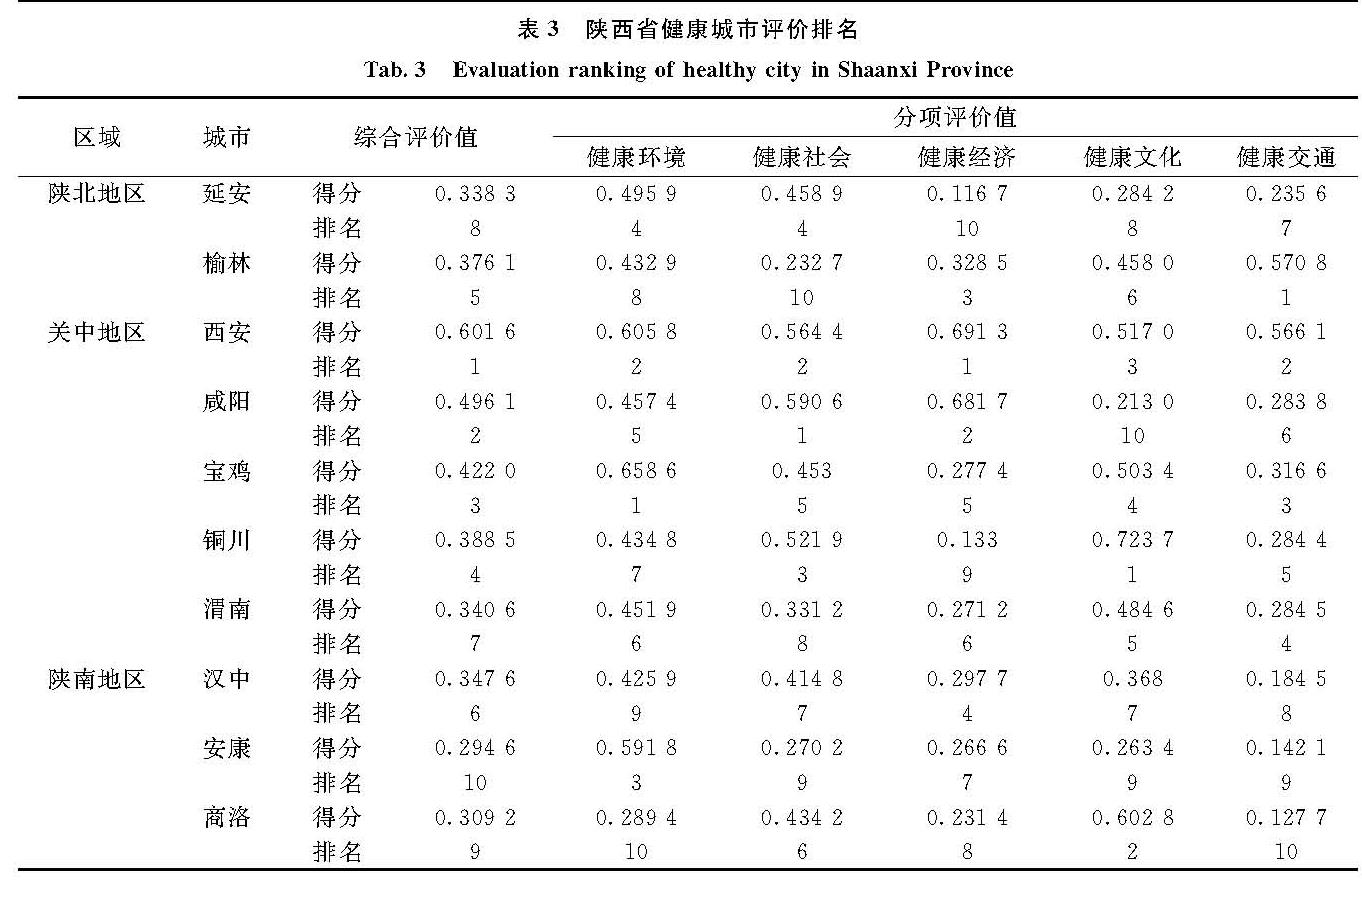 表3 陕西省健康城市评价排名<br/>Tab.3 Evaluation ranking of healthy city in Shaanxi Province